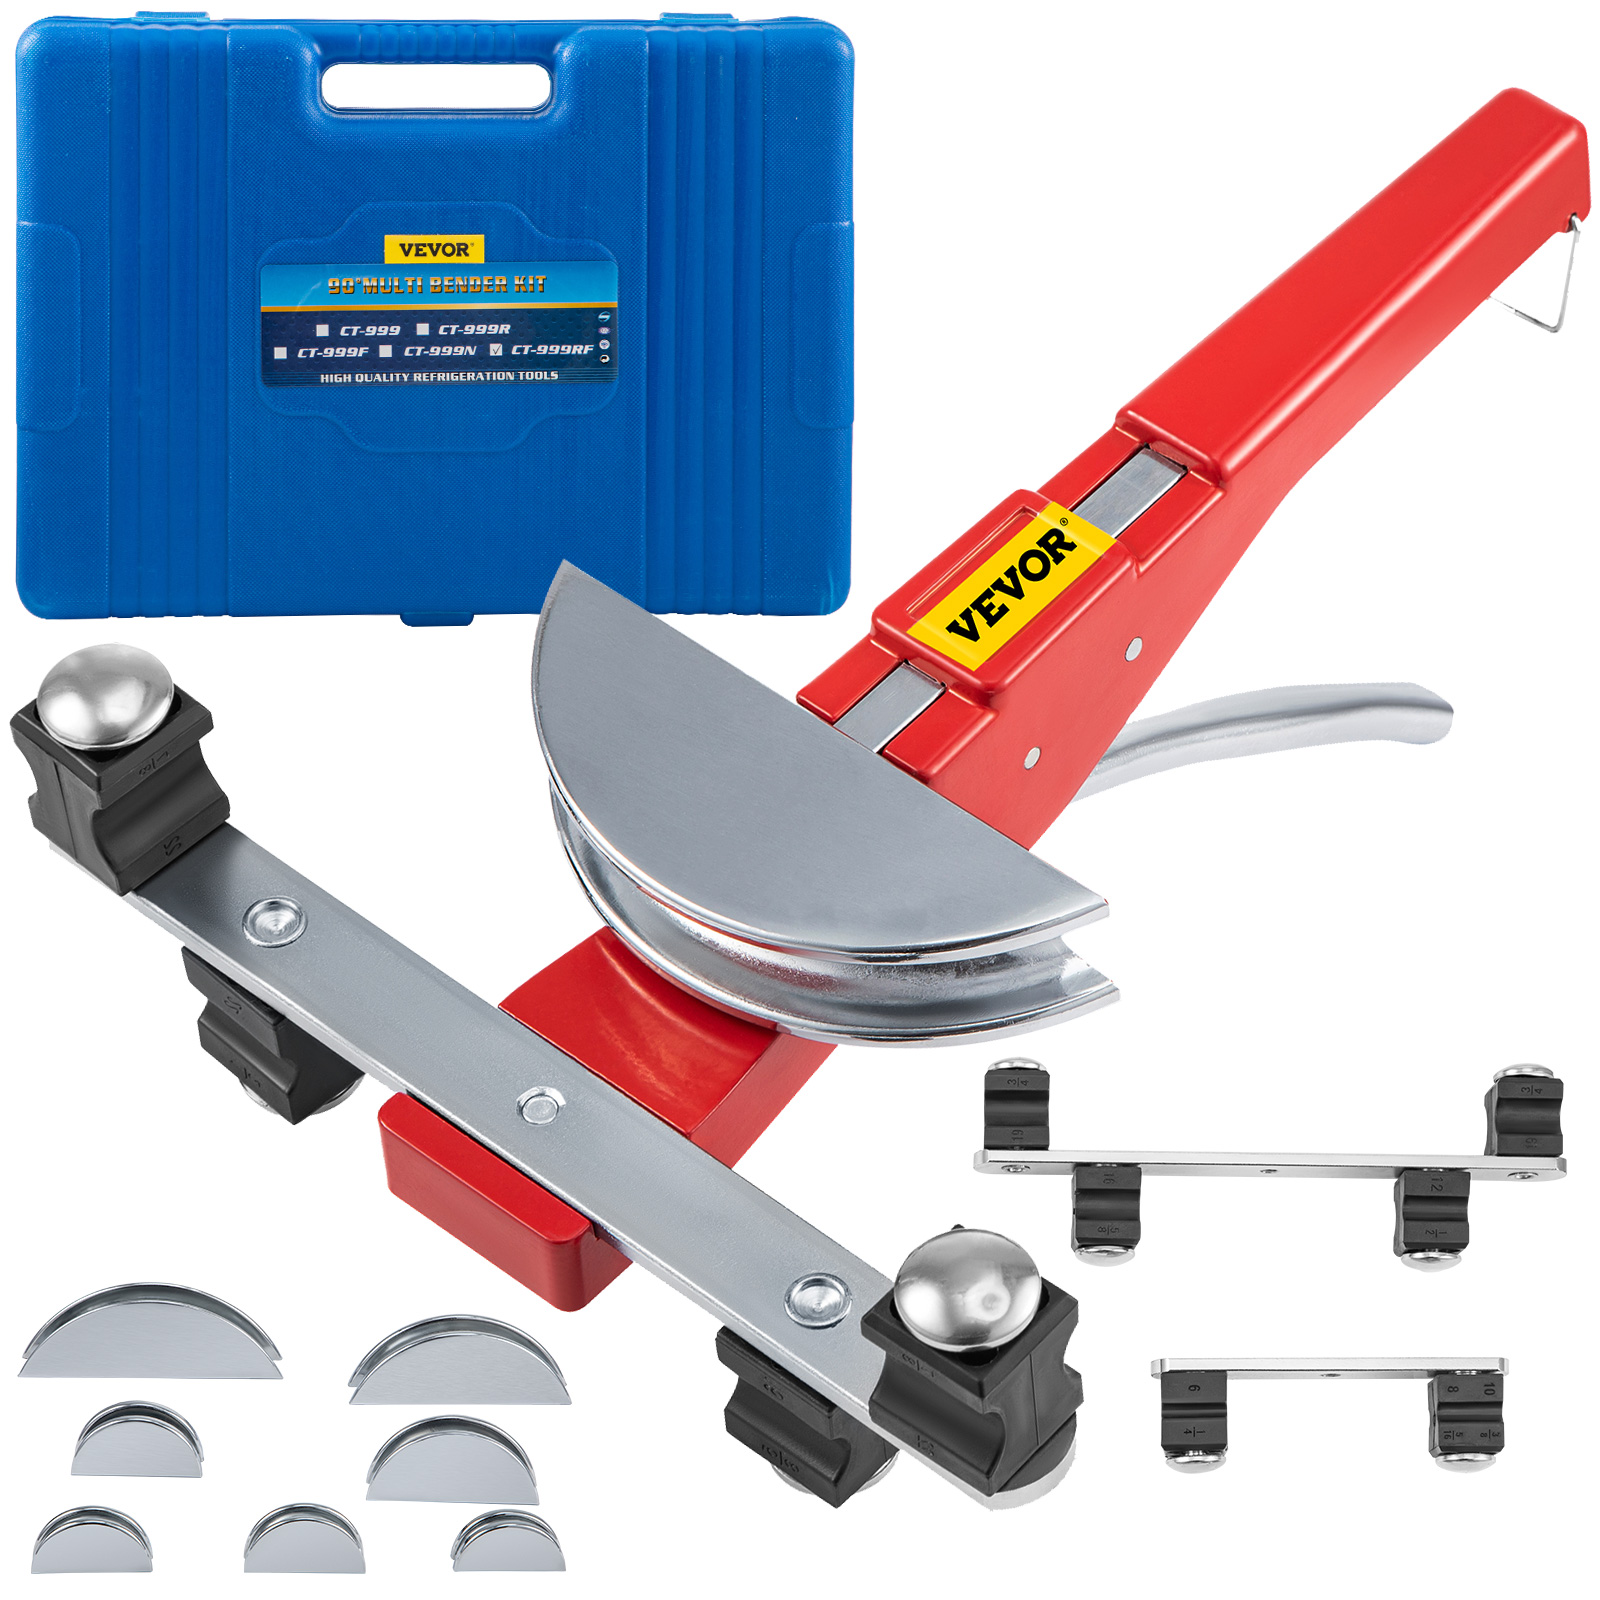 Caja de herramientas con ruedas (Portabilidad sin esfuerzo)